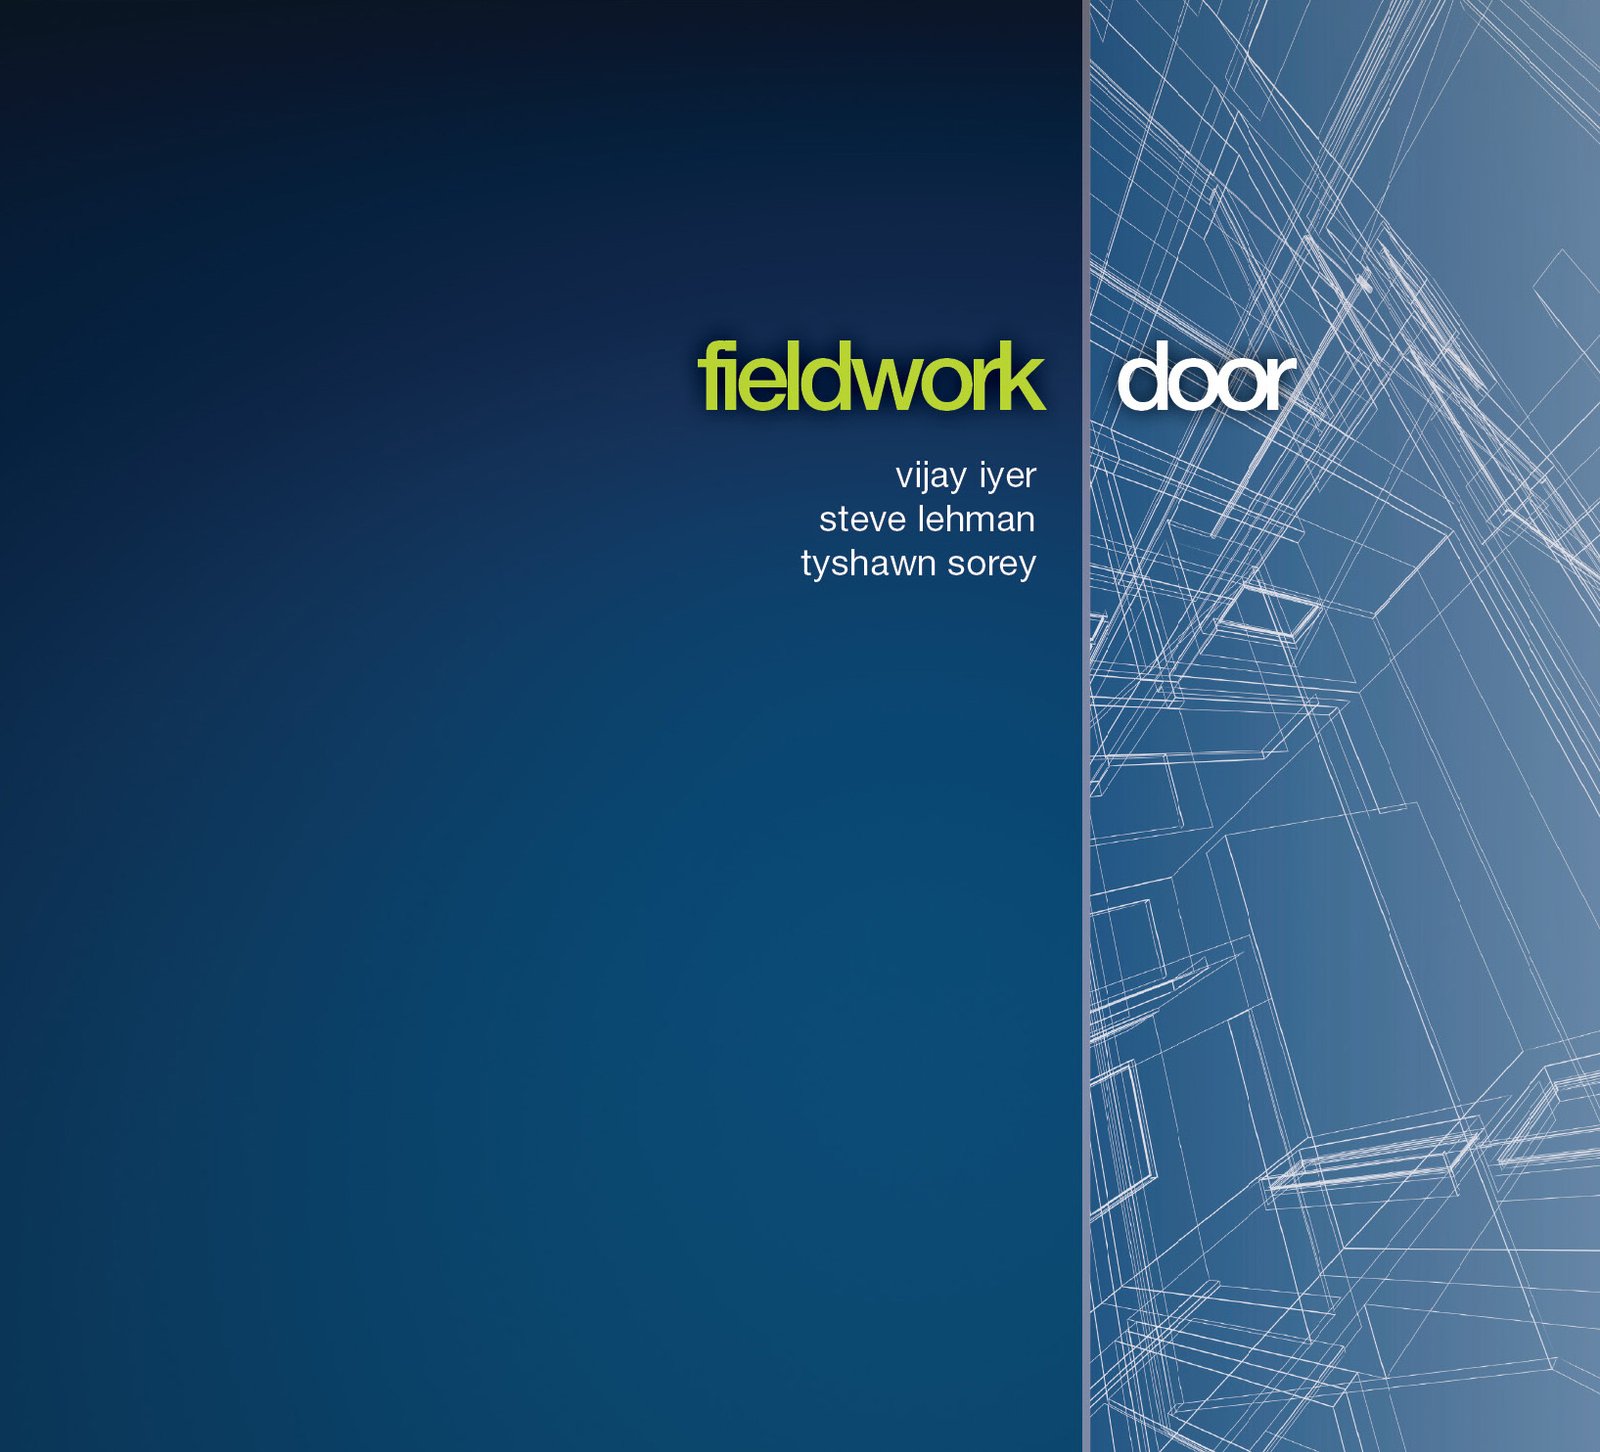 Door - Fieldwork